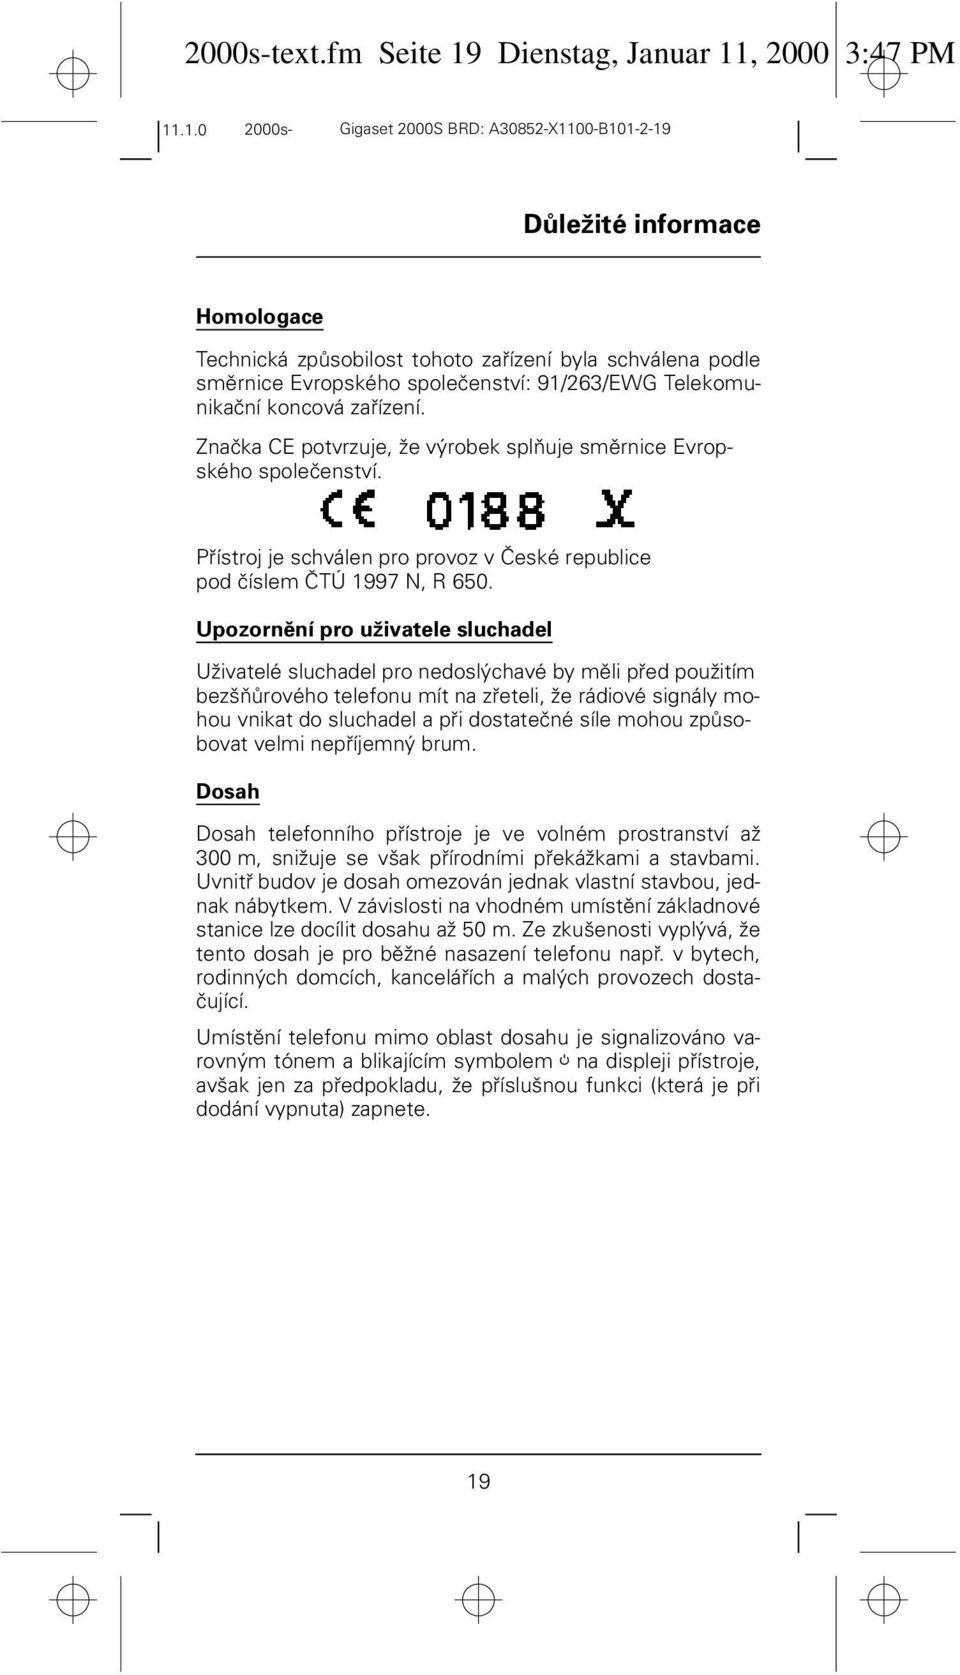 Telekomunikační koncová zařízení. Značka CE potvrzuje, že výrobek splňuje směrnice Evropského společenství. Přístroj je schválen pro provoz v České republice pod číslem ČTÚ 1997 N, R 650.